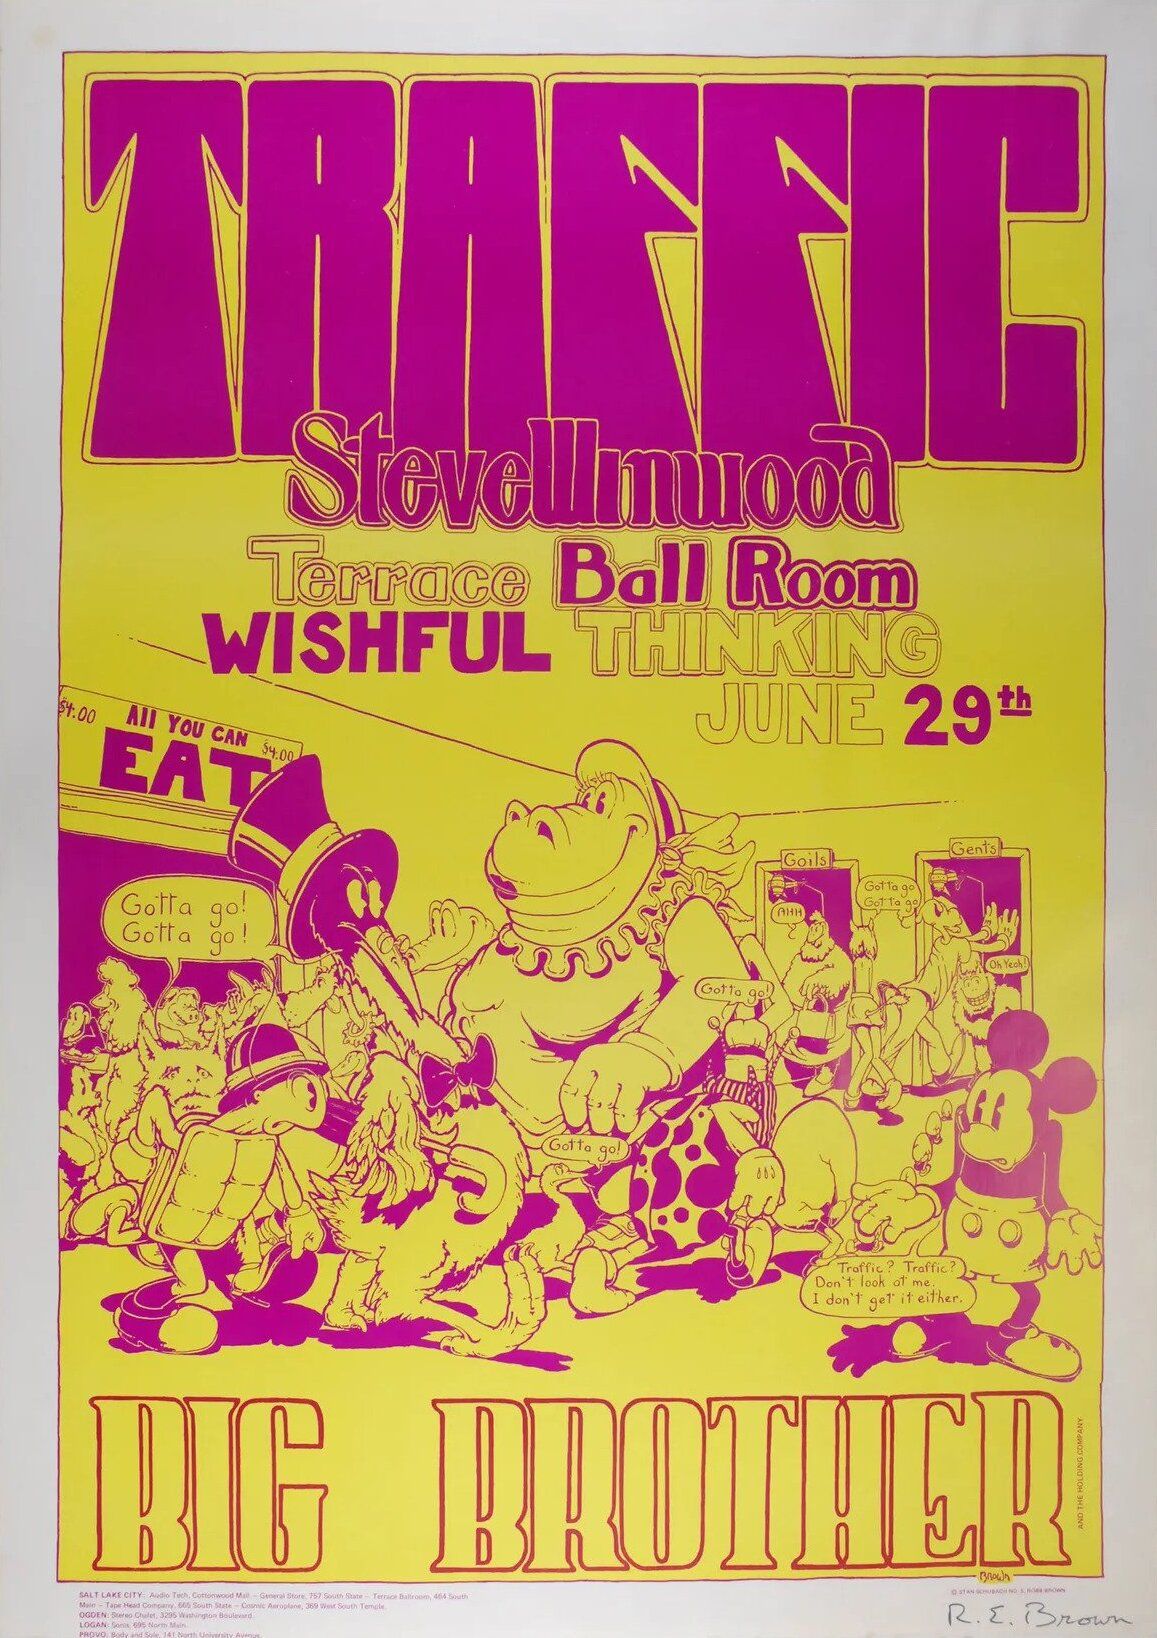 Traffic & Steve Winwood Terrace Ballroom 1970 Concert Poster